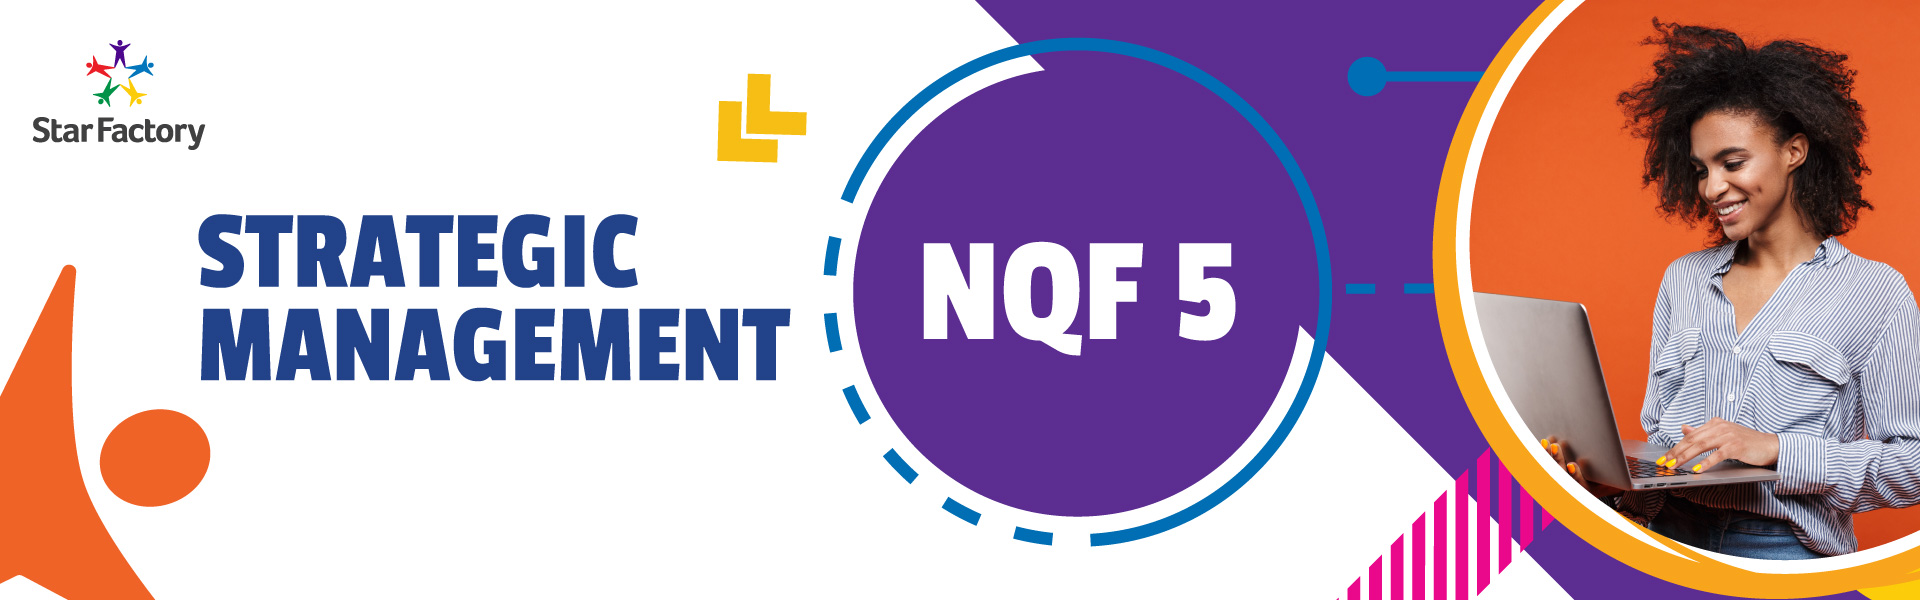 Strategic Management NQF5